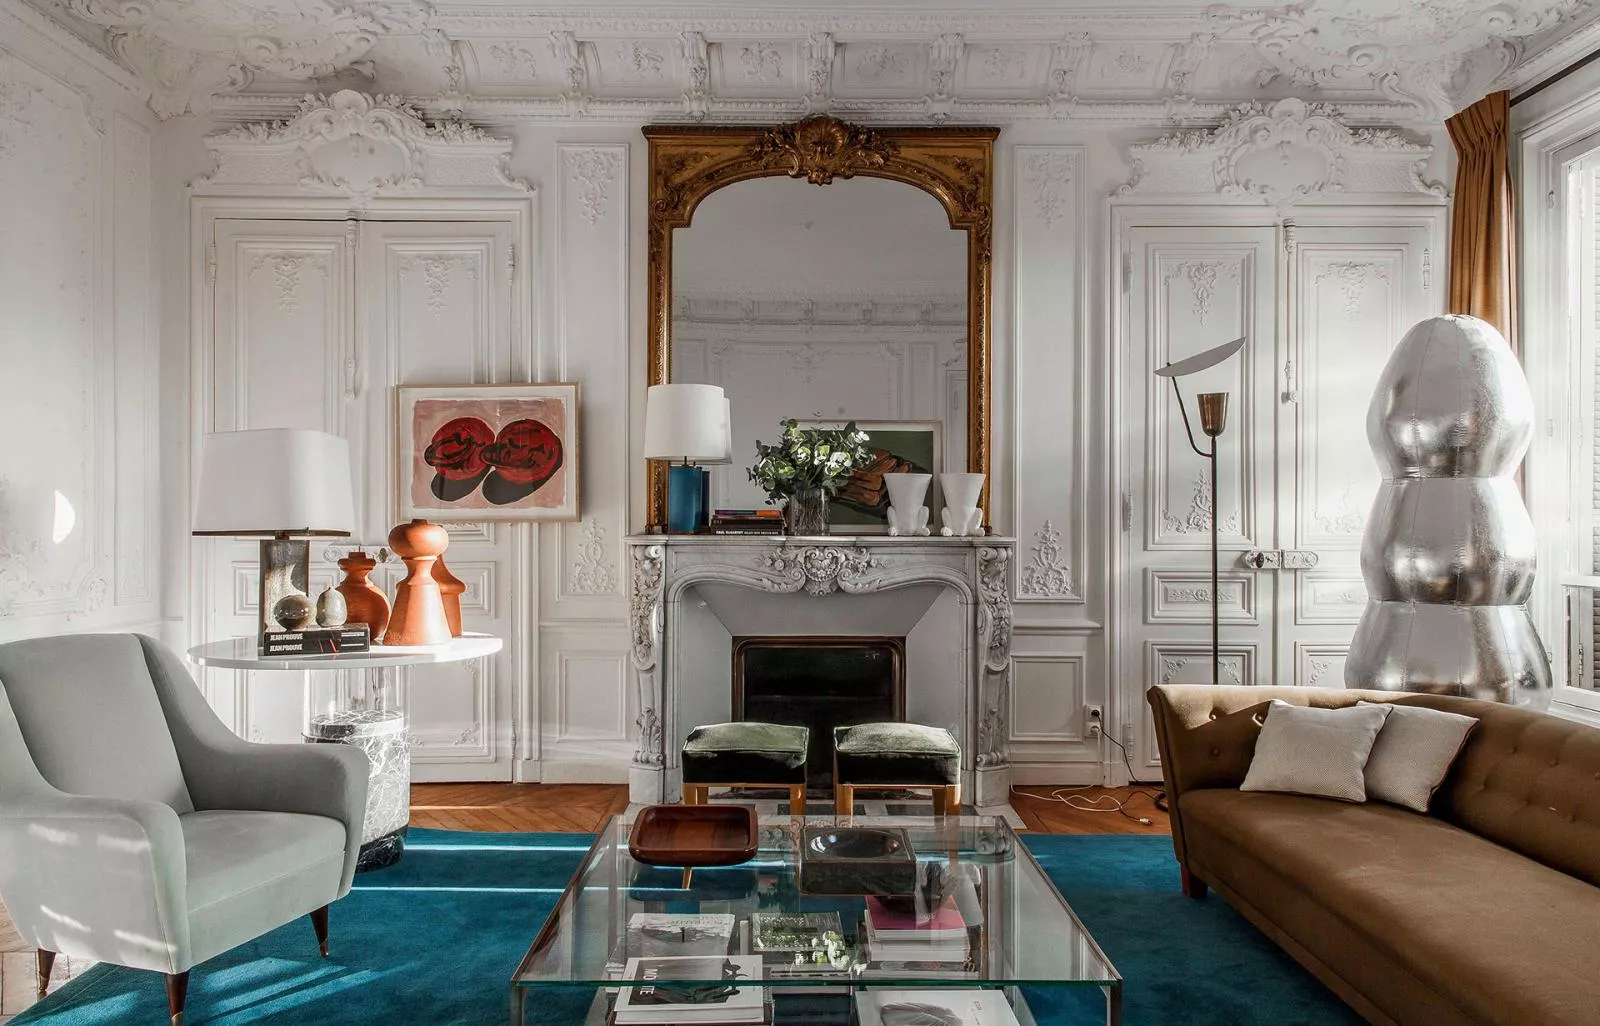 Как создать интерьер в духе парижских квартир?